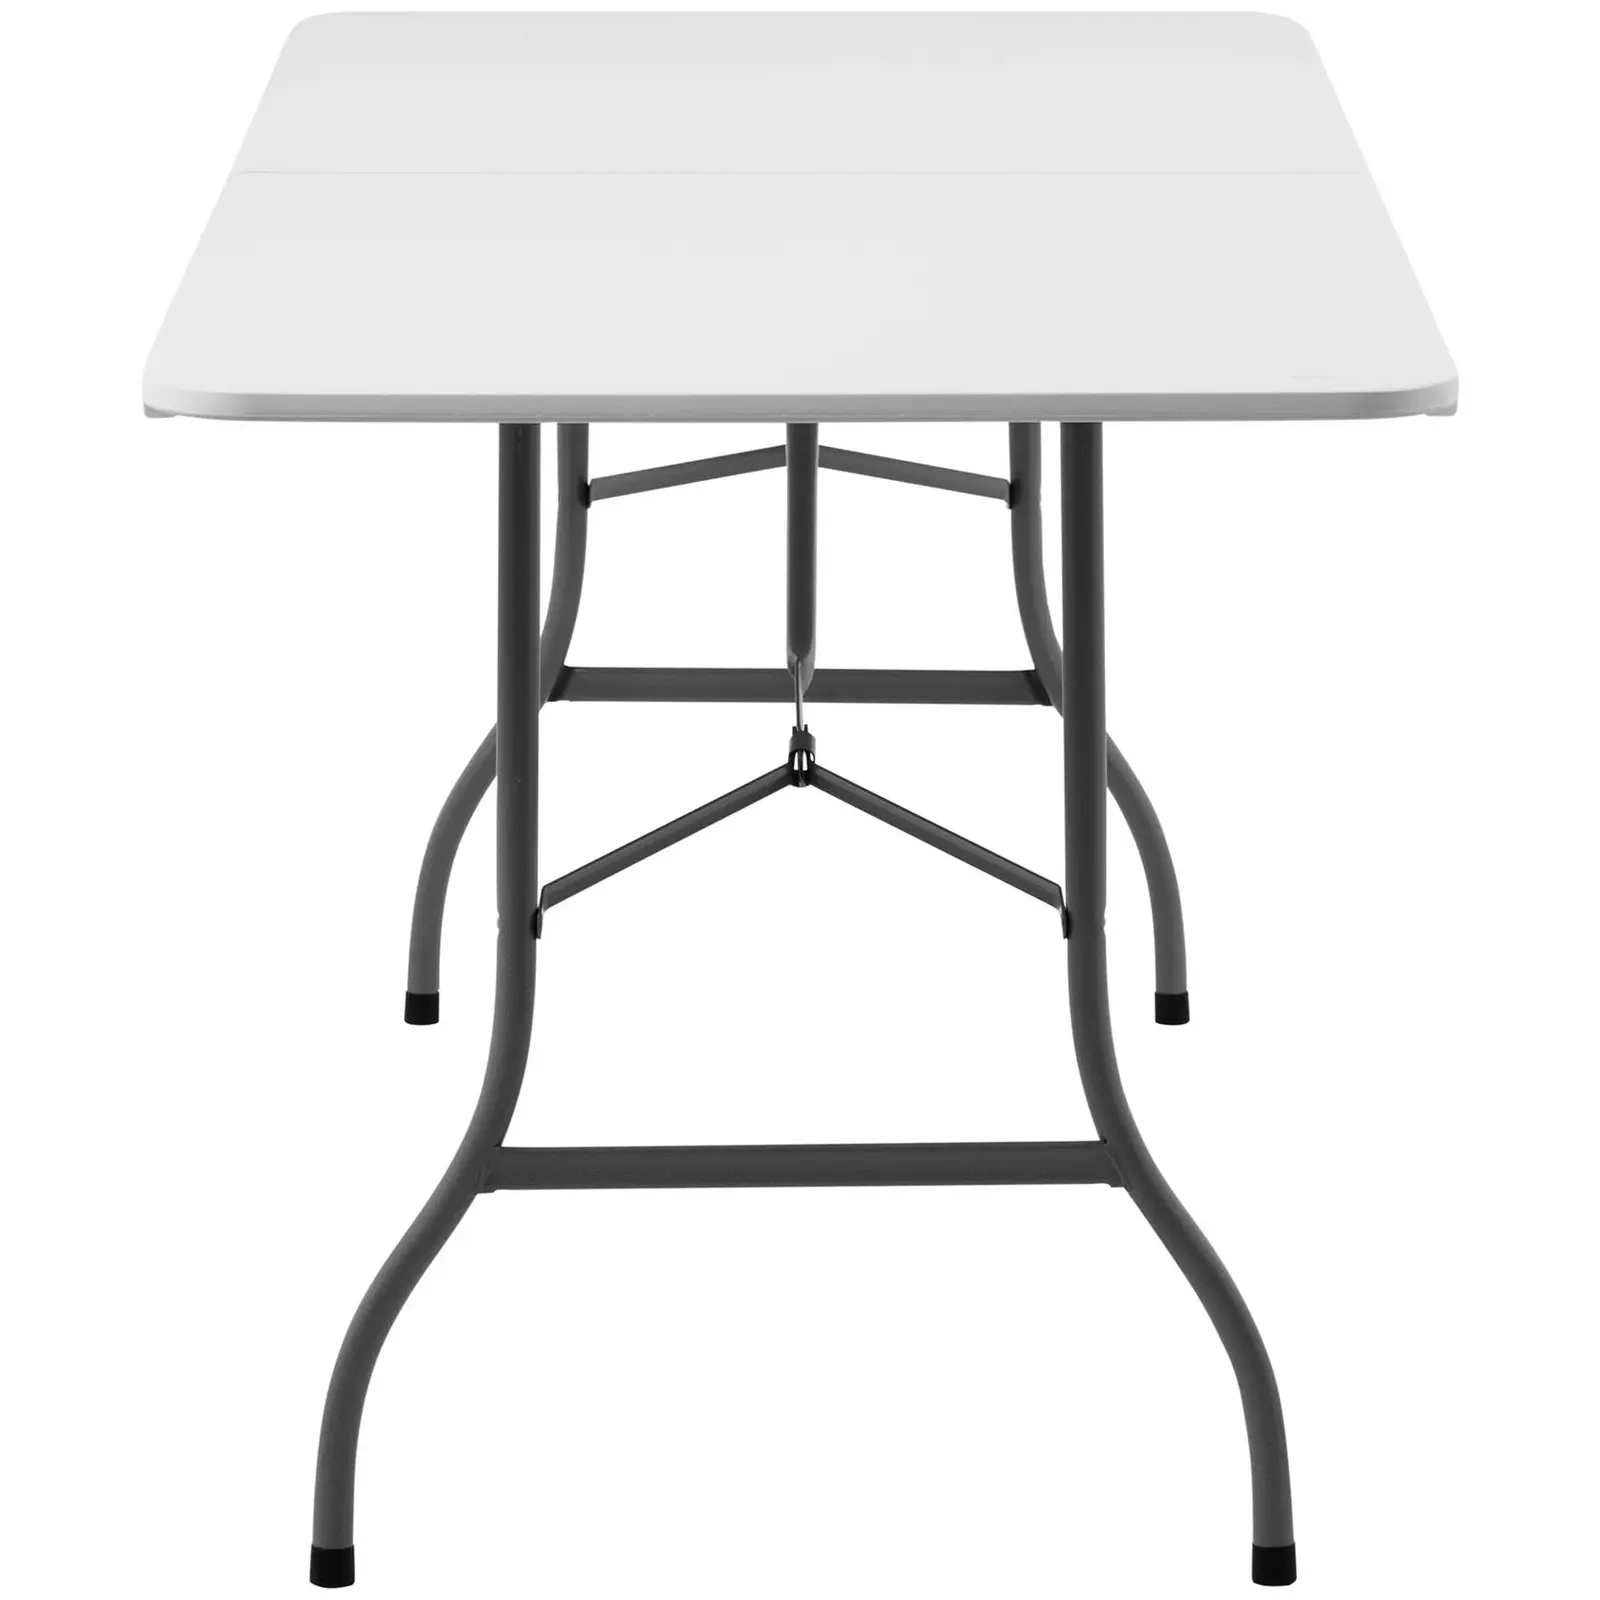 Összecsukható asztal - 1800 x 750 x 740 mm - Royal Catering - 150 kg - kültéri/beltéri - White